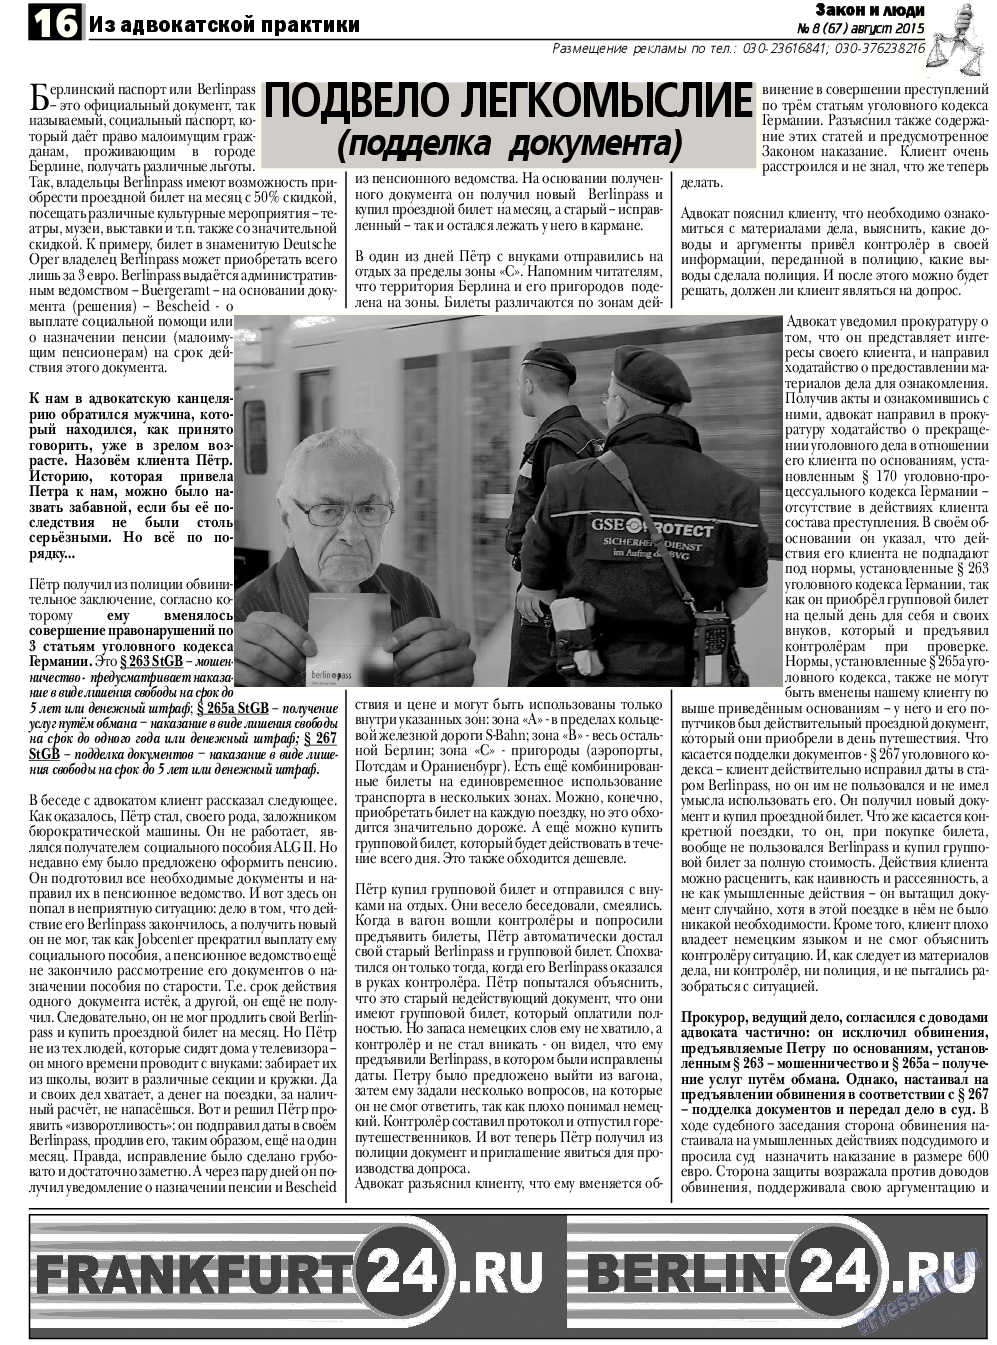 Закон и люди, газета. 2015 №8 стр.16